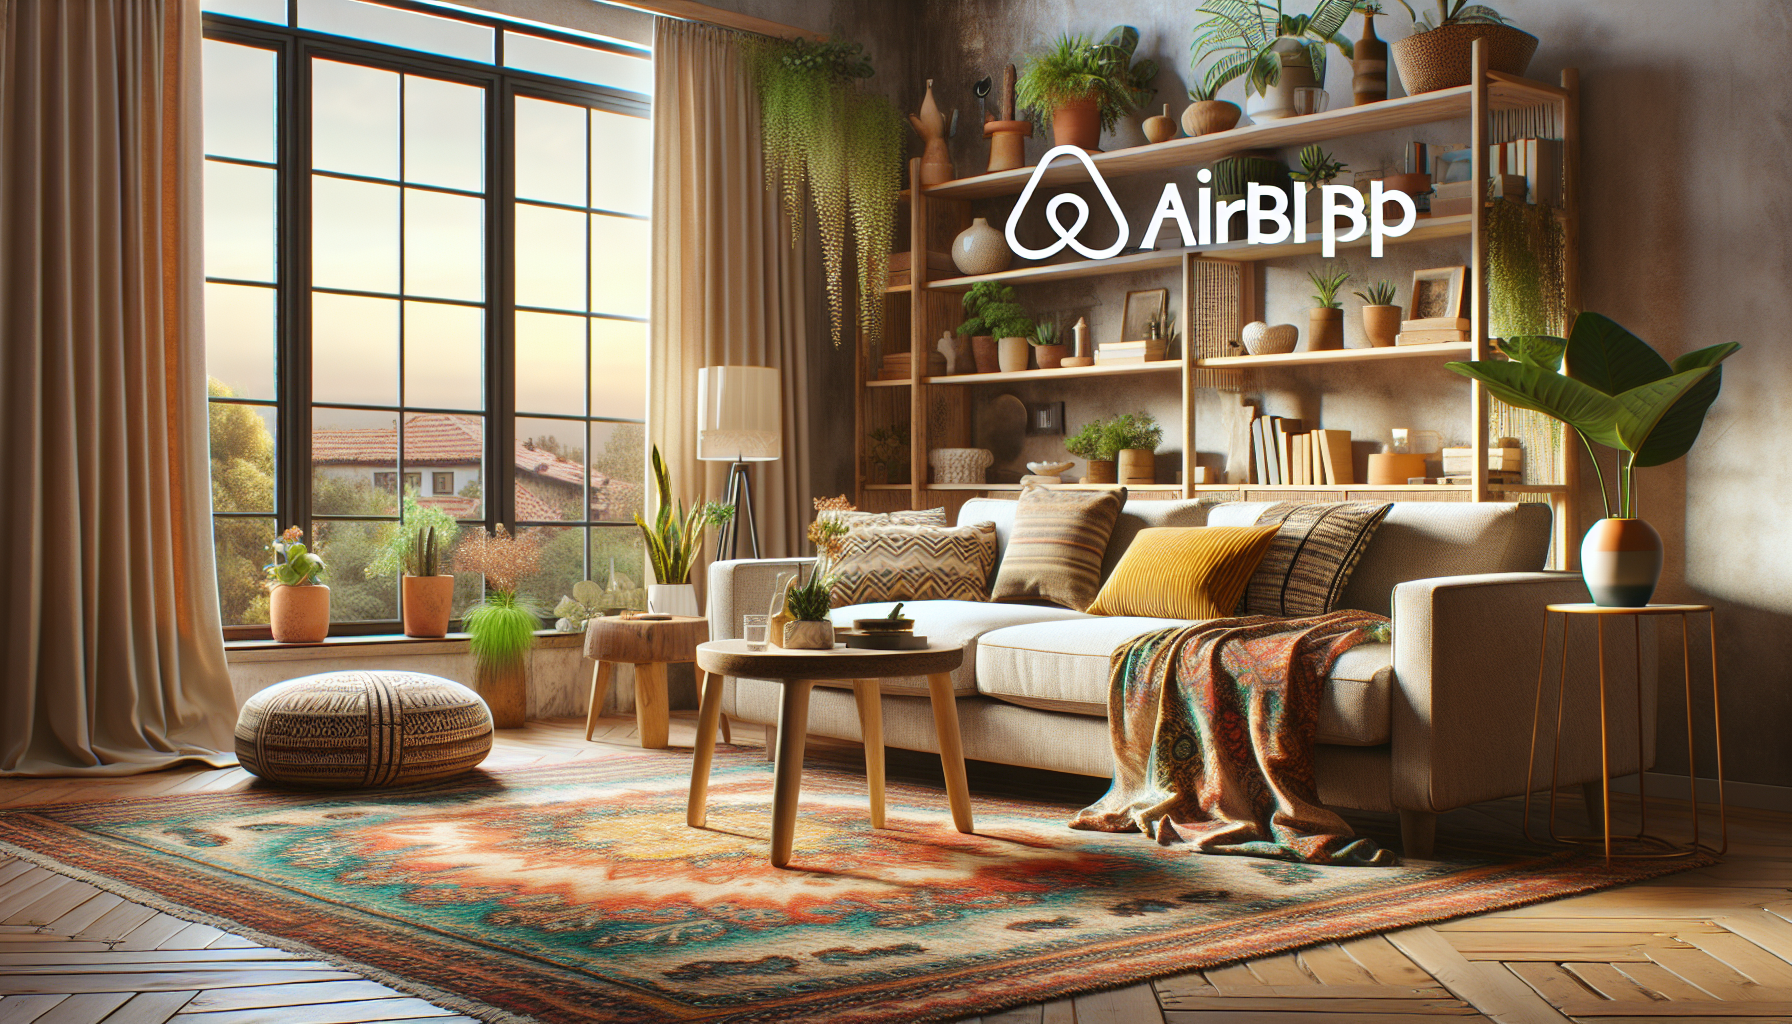 découvrez comment garantir la qualité des annonces sur airbnb et réservez en toute confiance grâce à nos conseils experts.